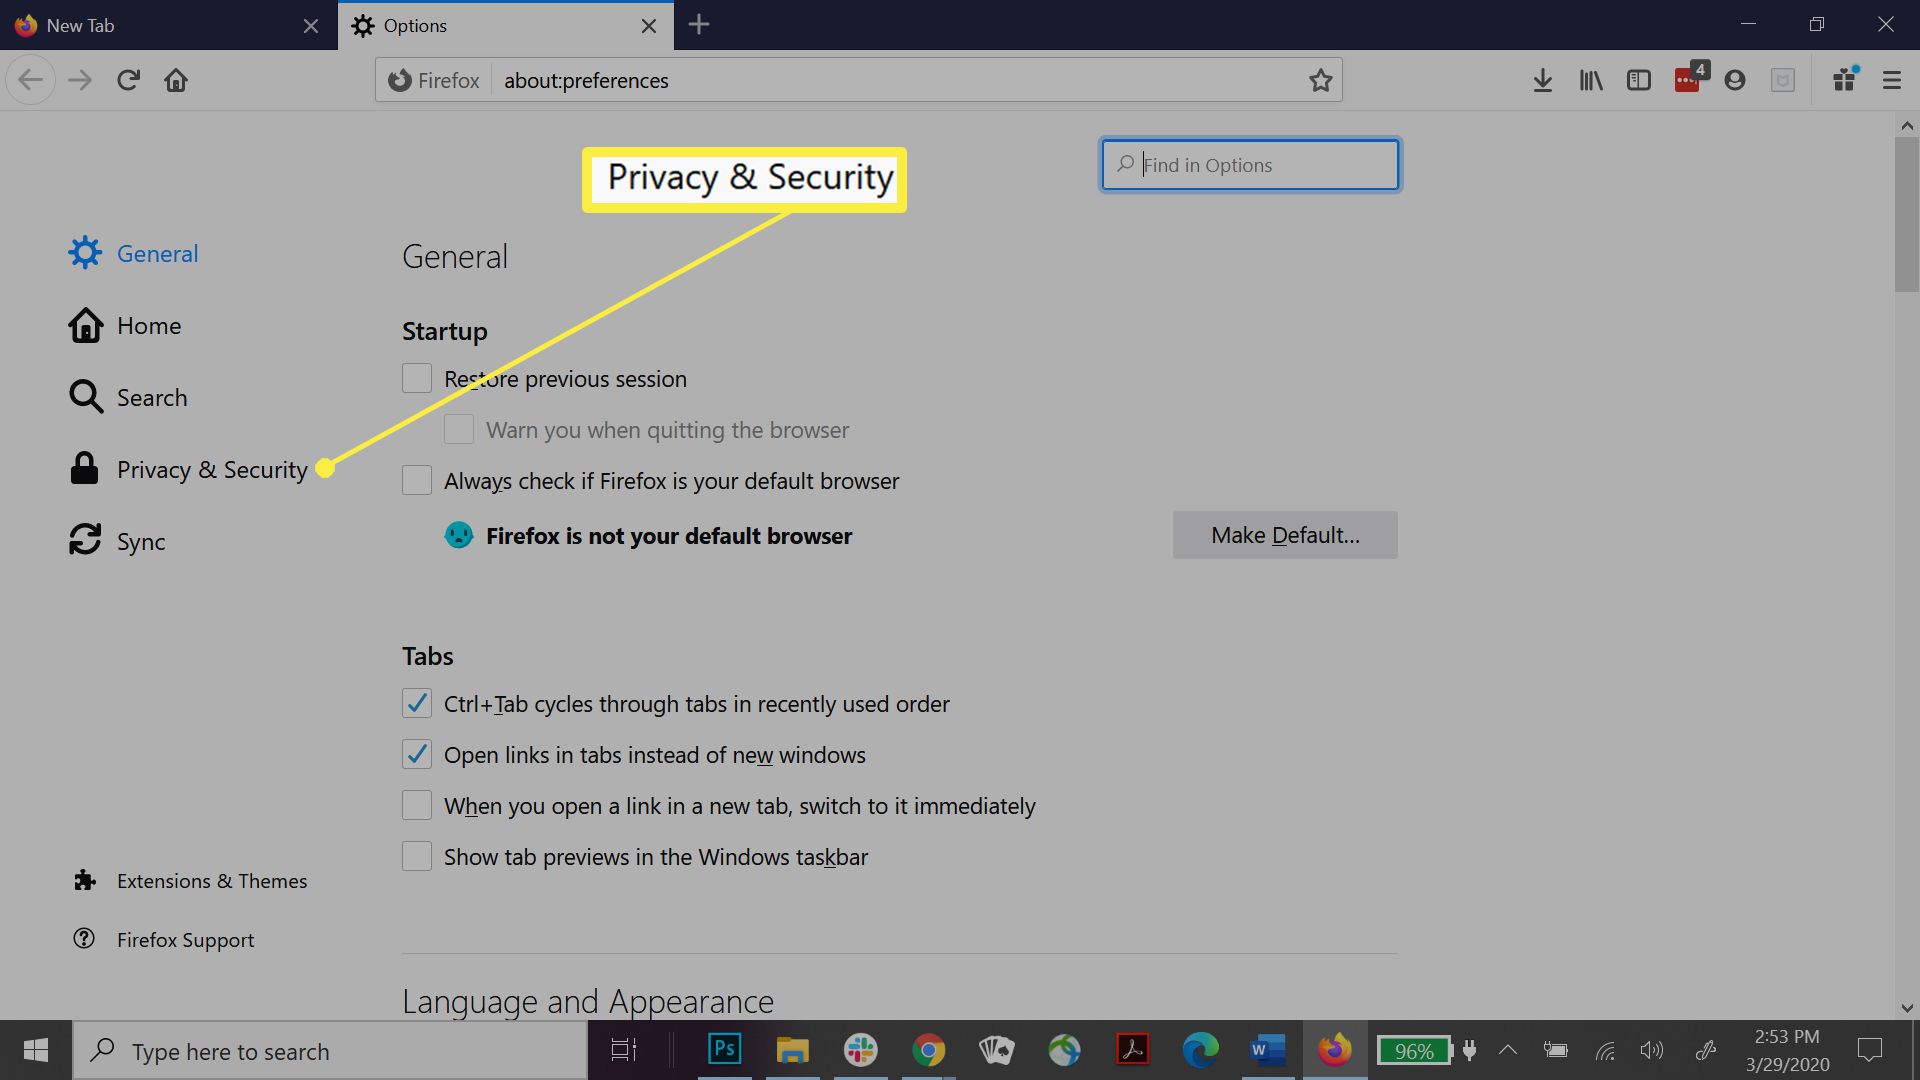 Firefox sekretess- och säkerhetsinställningar.